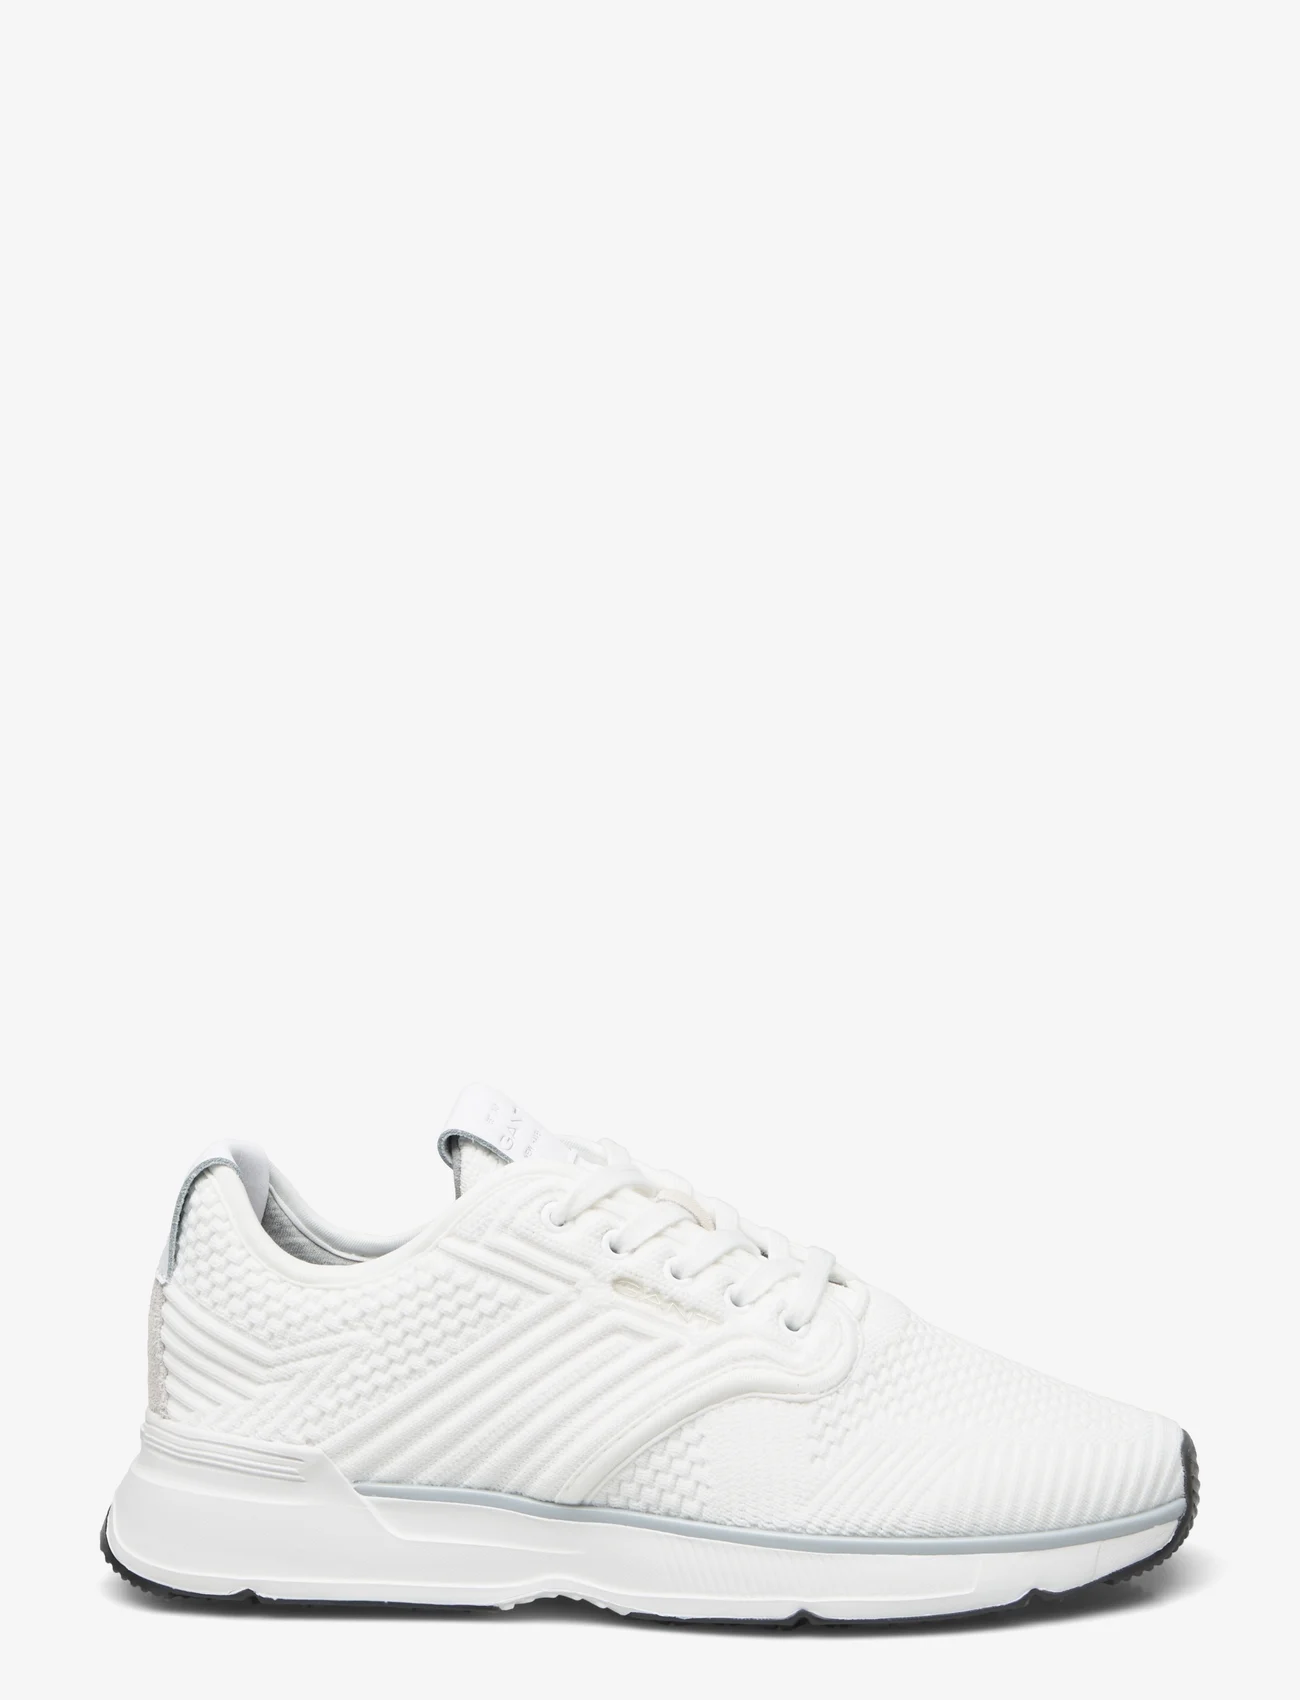 GANT - Beeker Sneaker - lav ankel - off white - 1